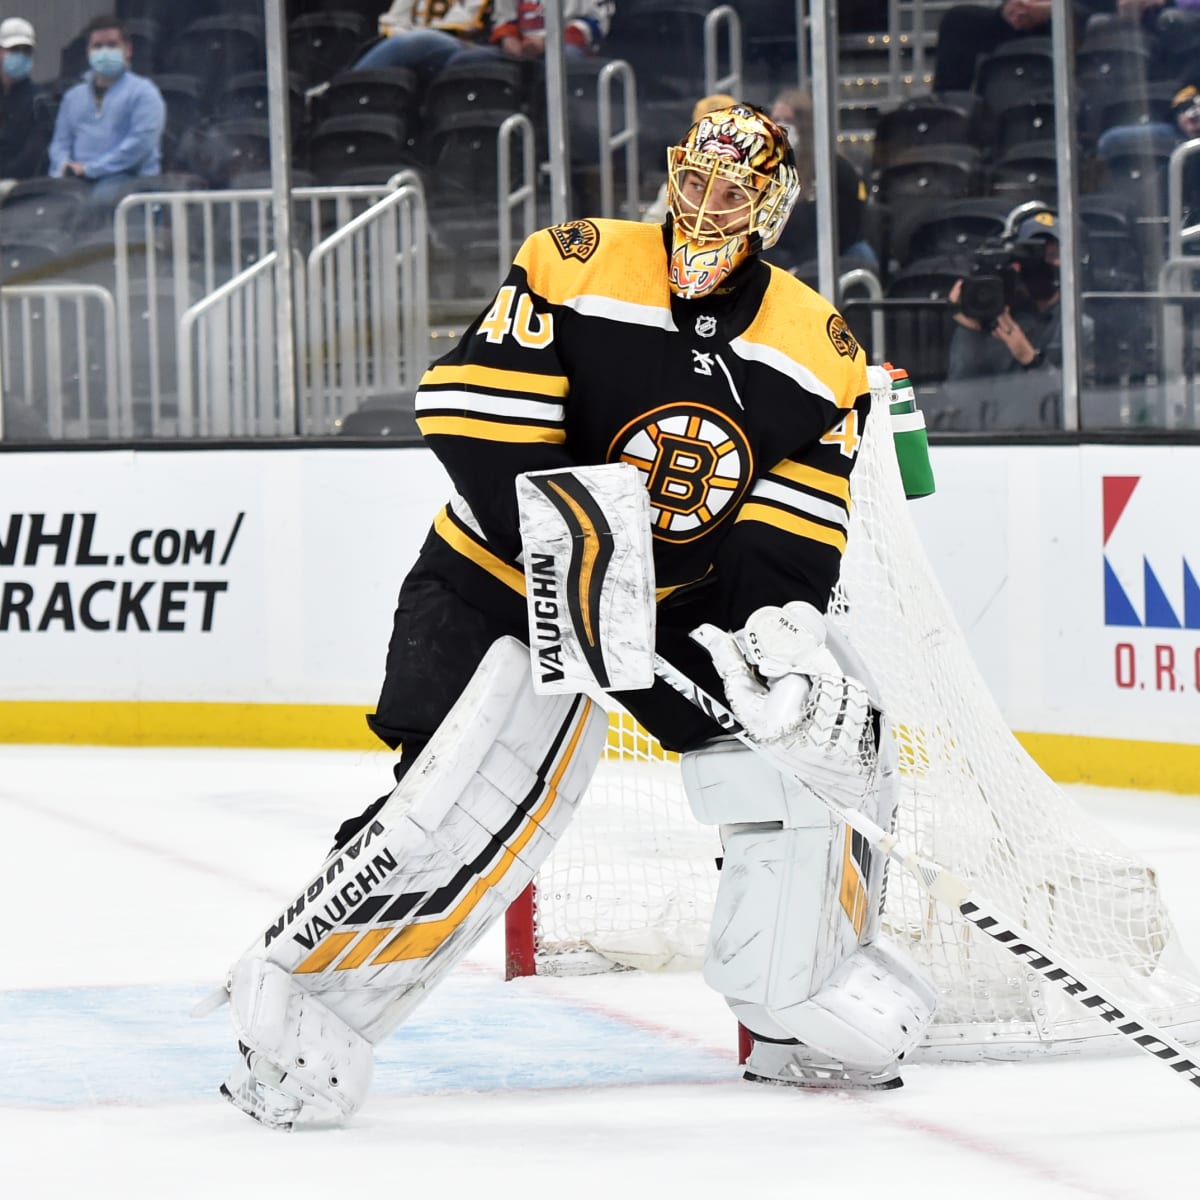 Bruins goalie Tuukka Rask ends comeback, announces retirement